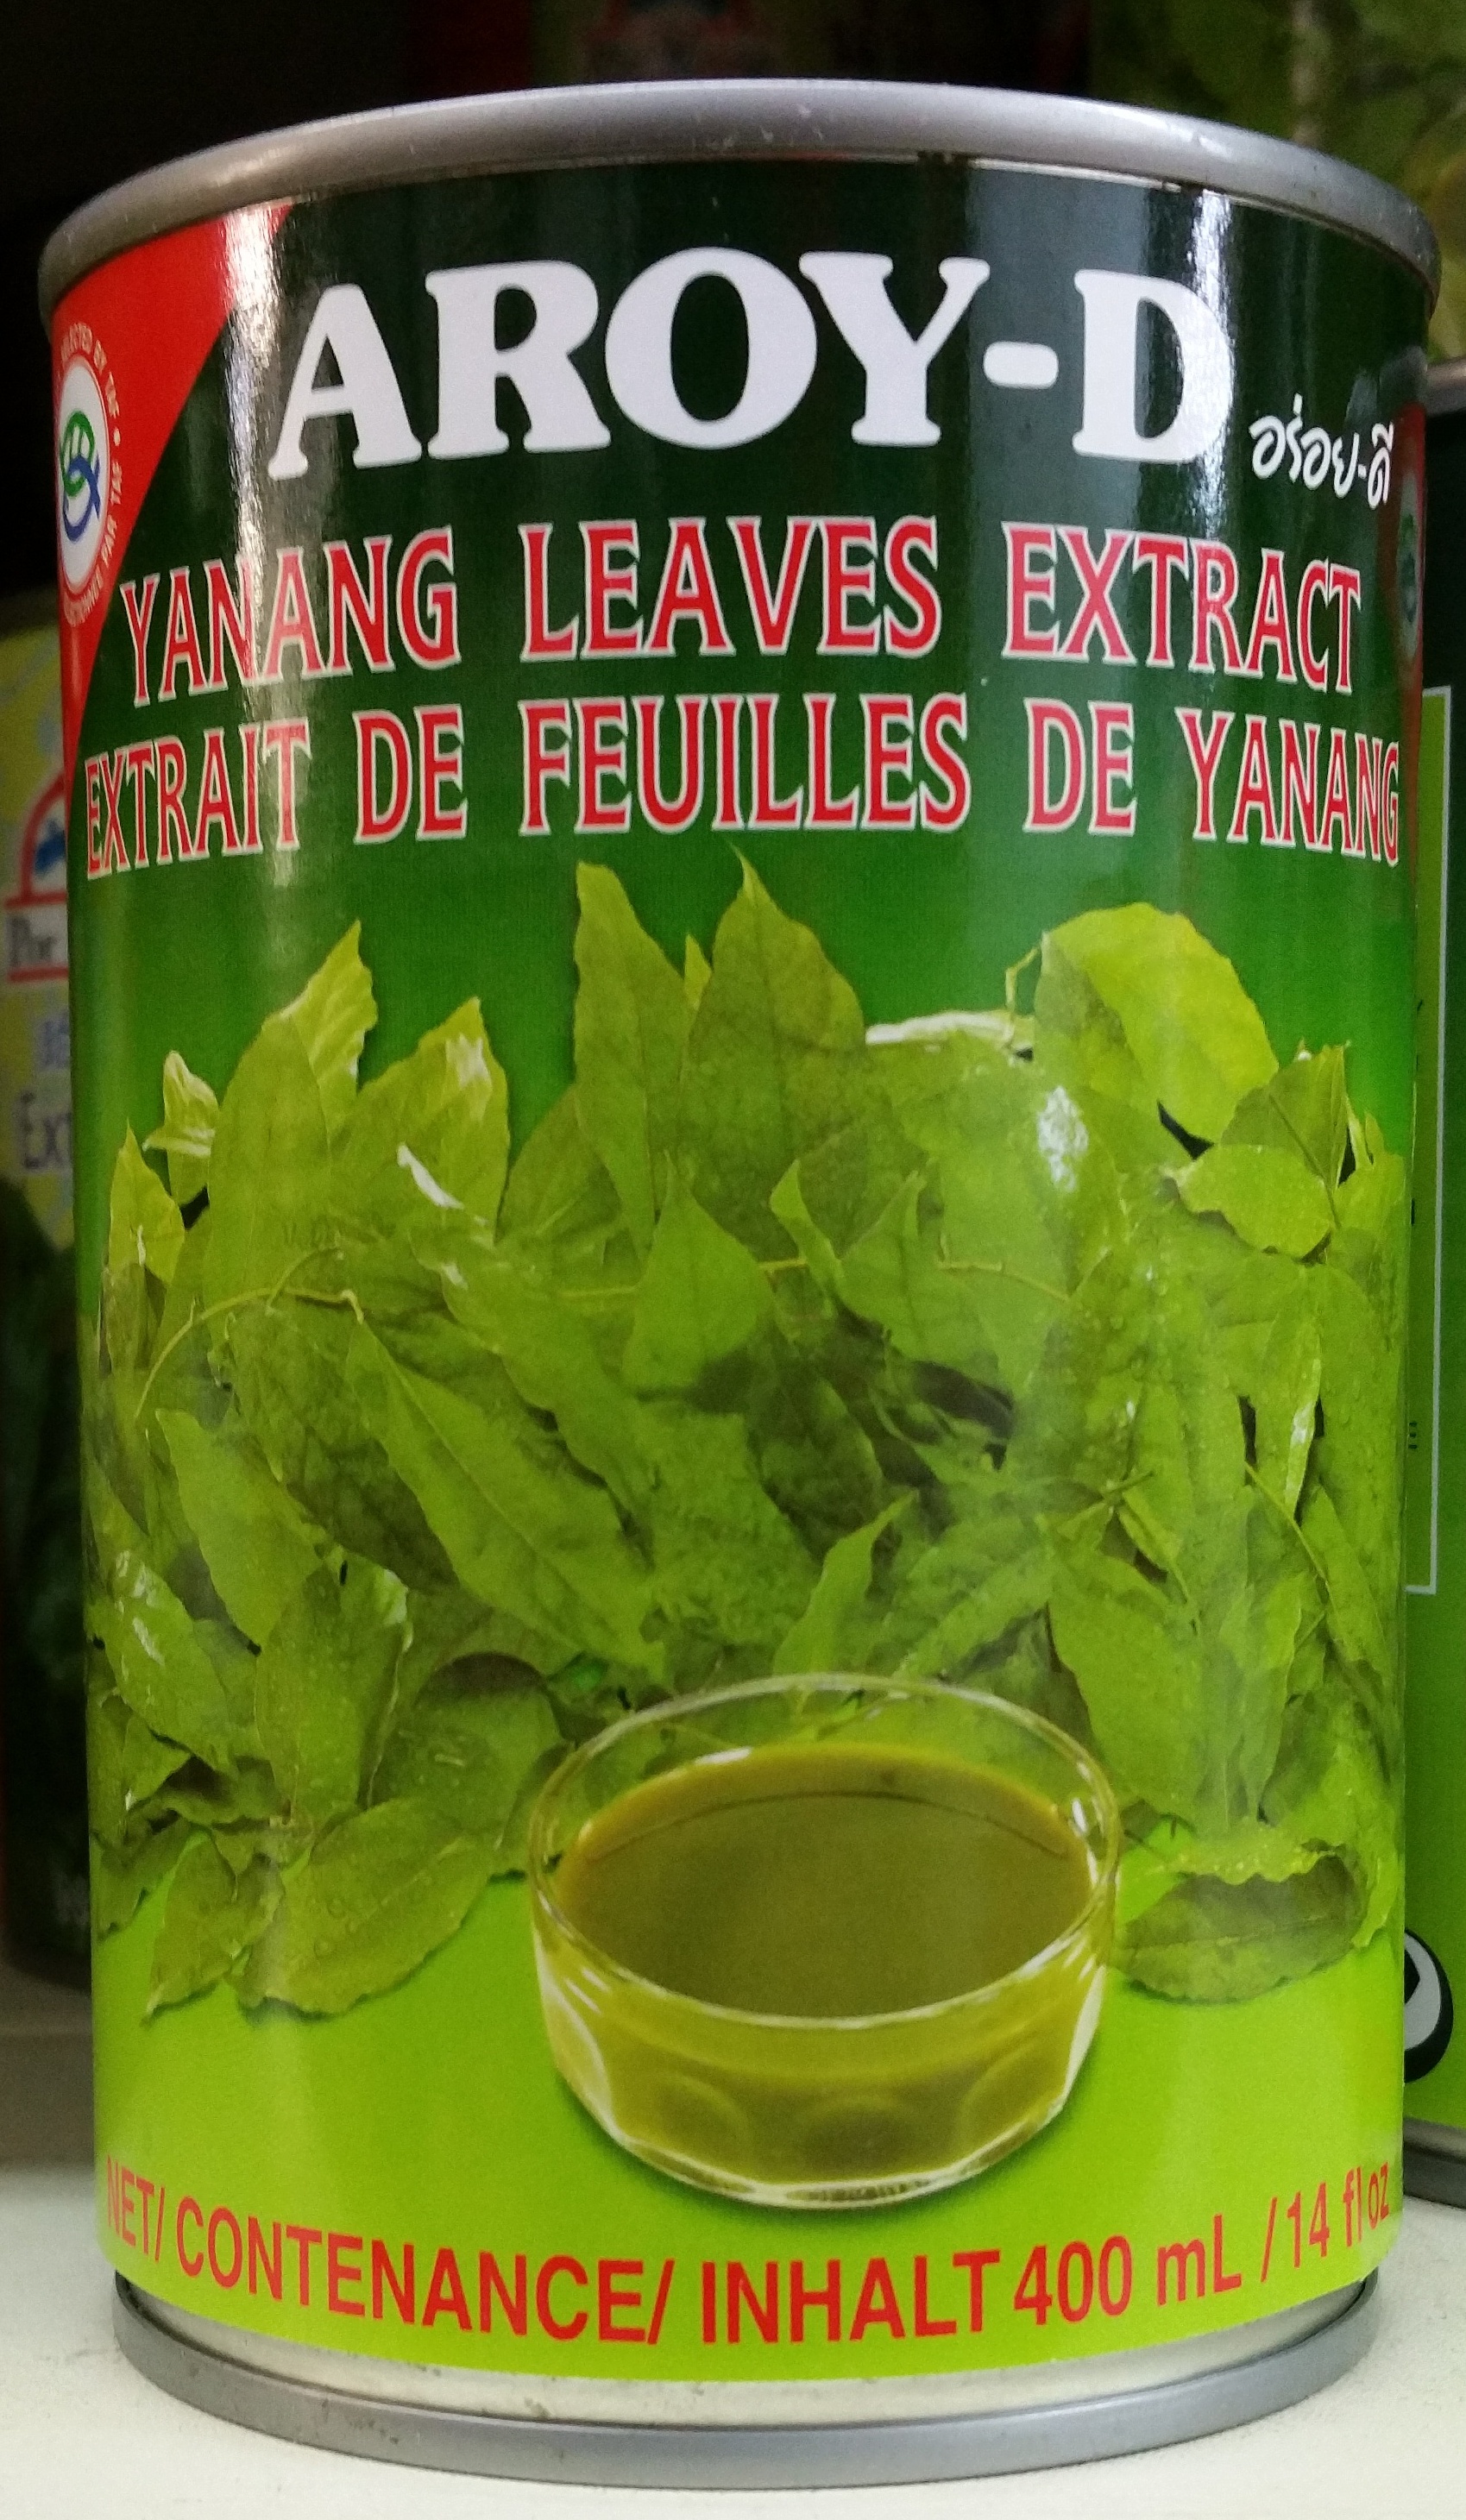 Extrait de feuilles de Yanang - Product - fr